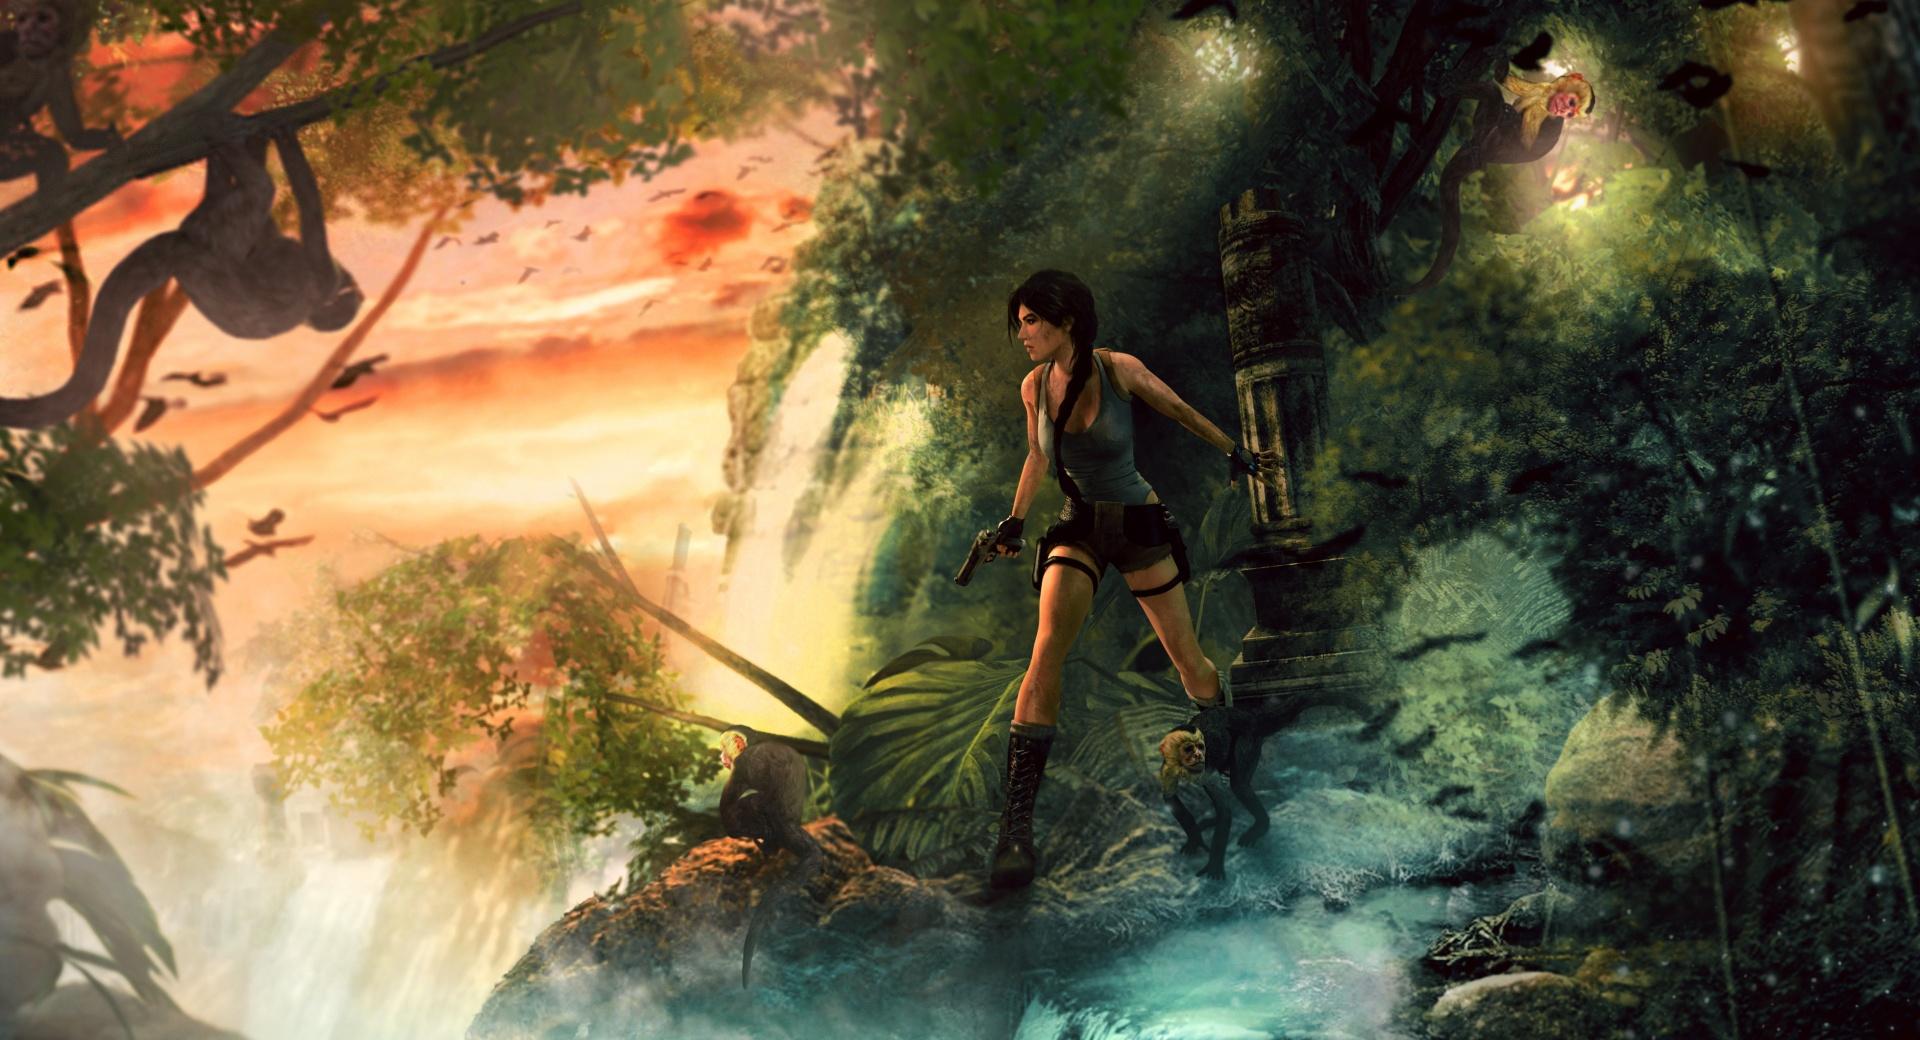 Lara Croft Jungle at 2048 x 2048 iPad size wallpapers HD quality